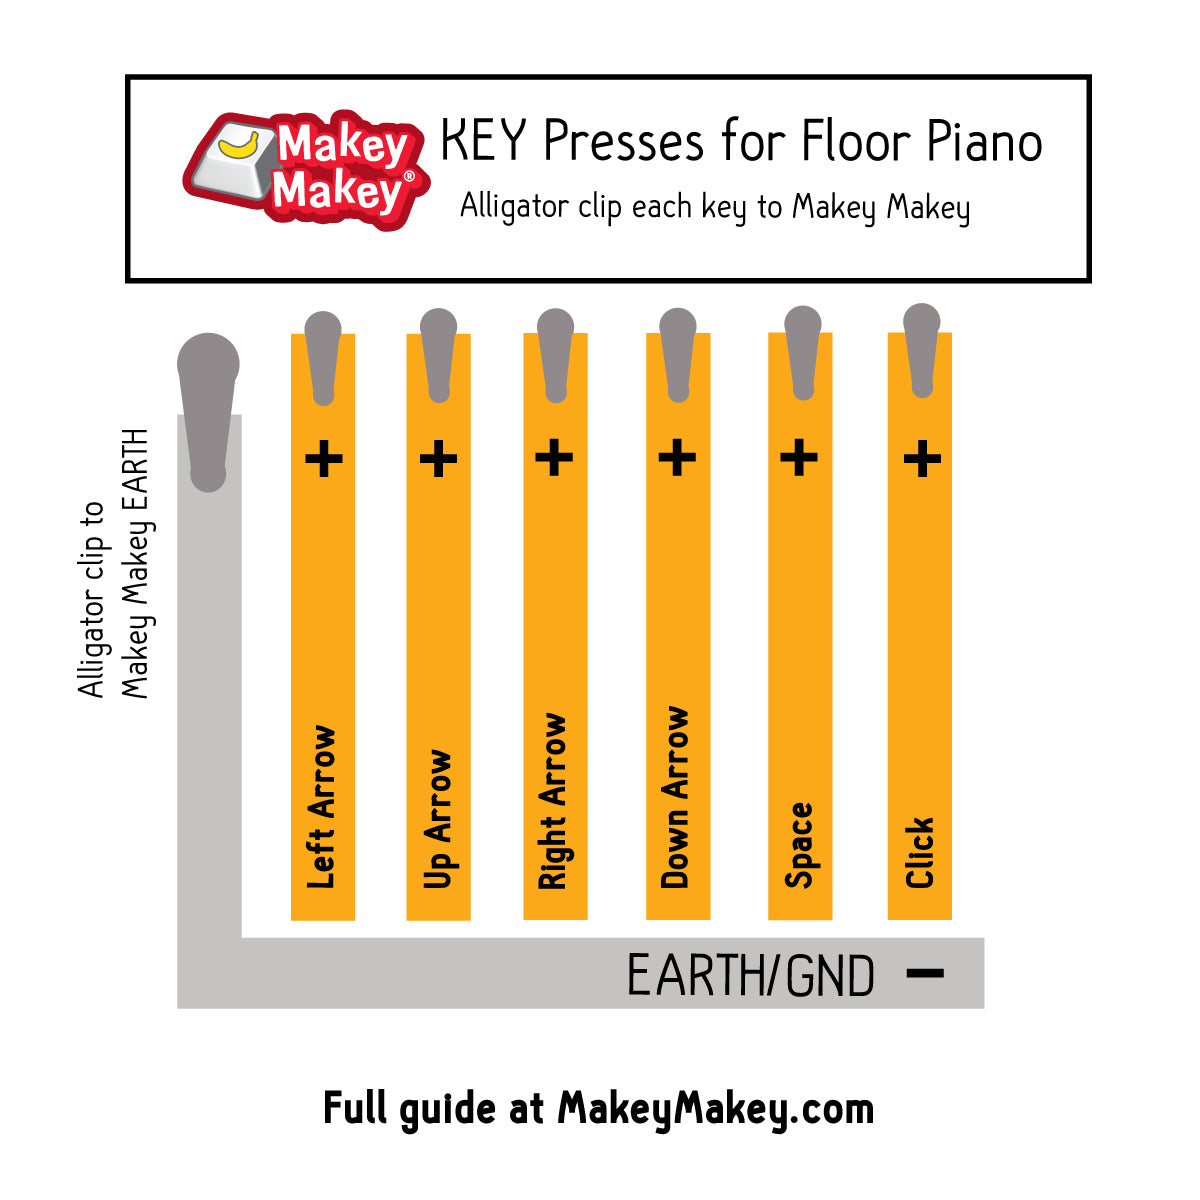 key presses for Makey Makey floor piano. 